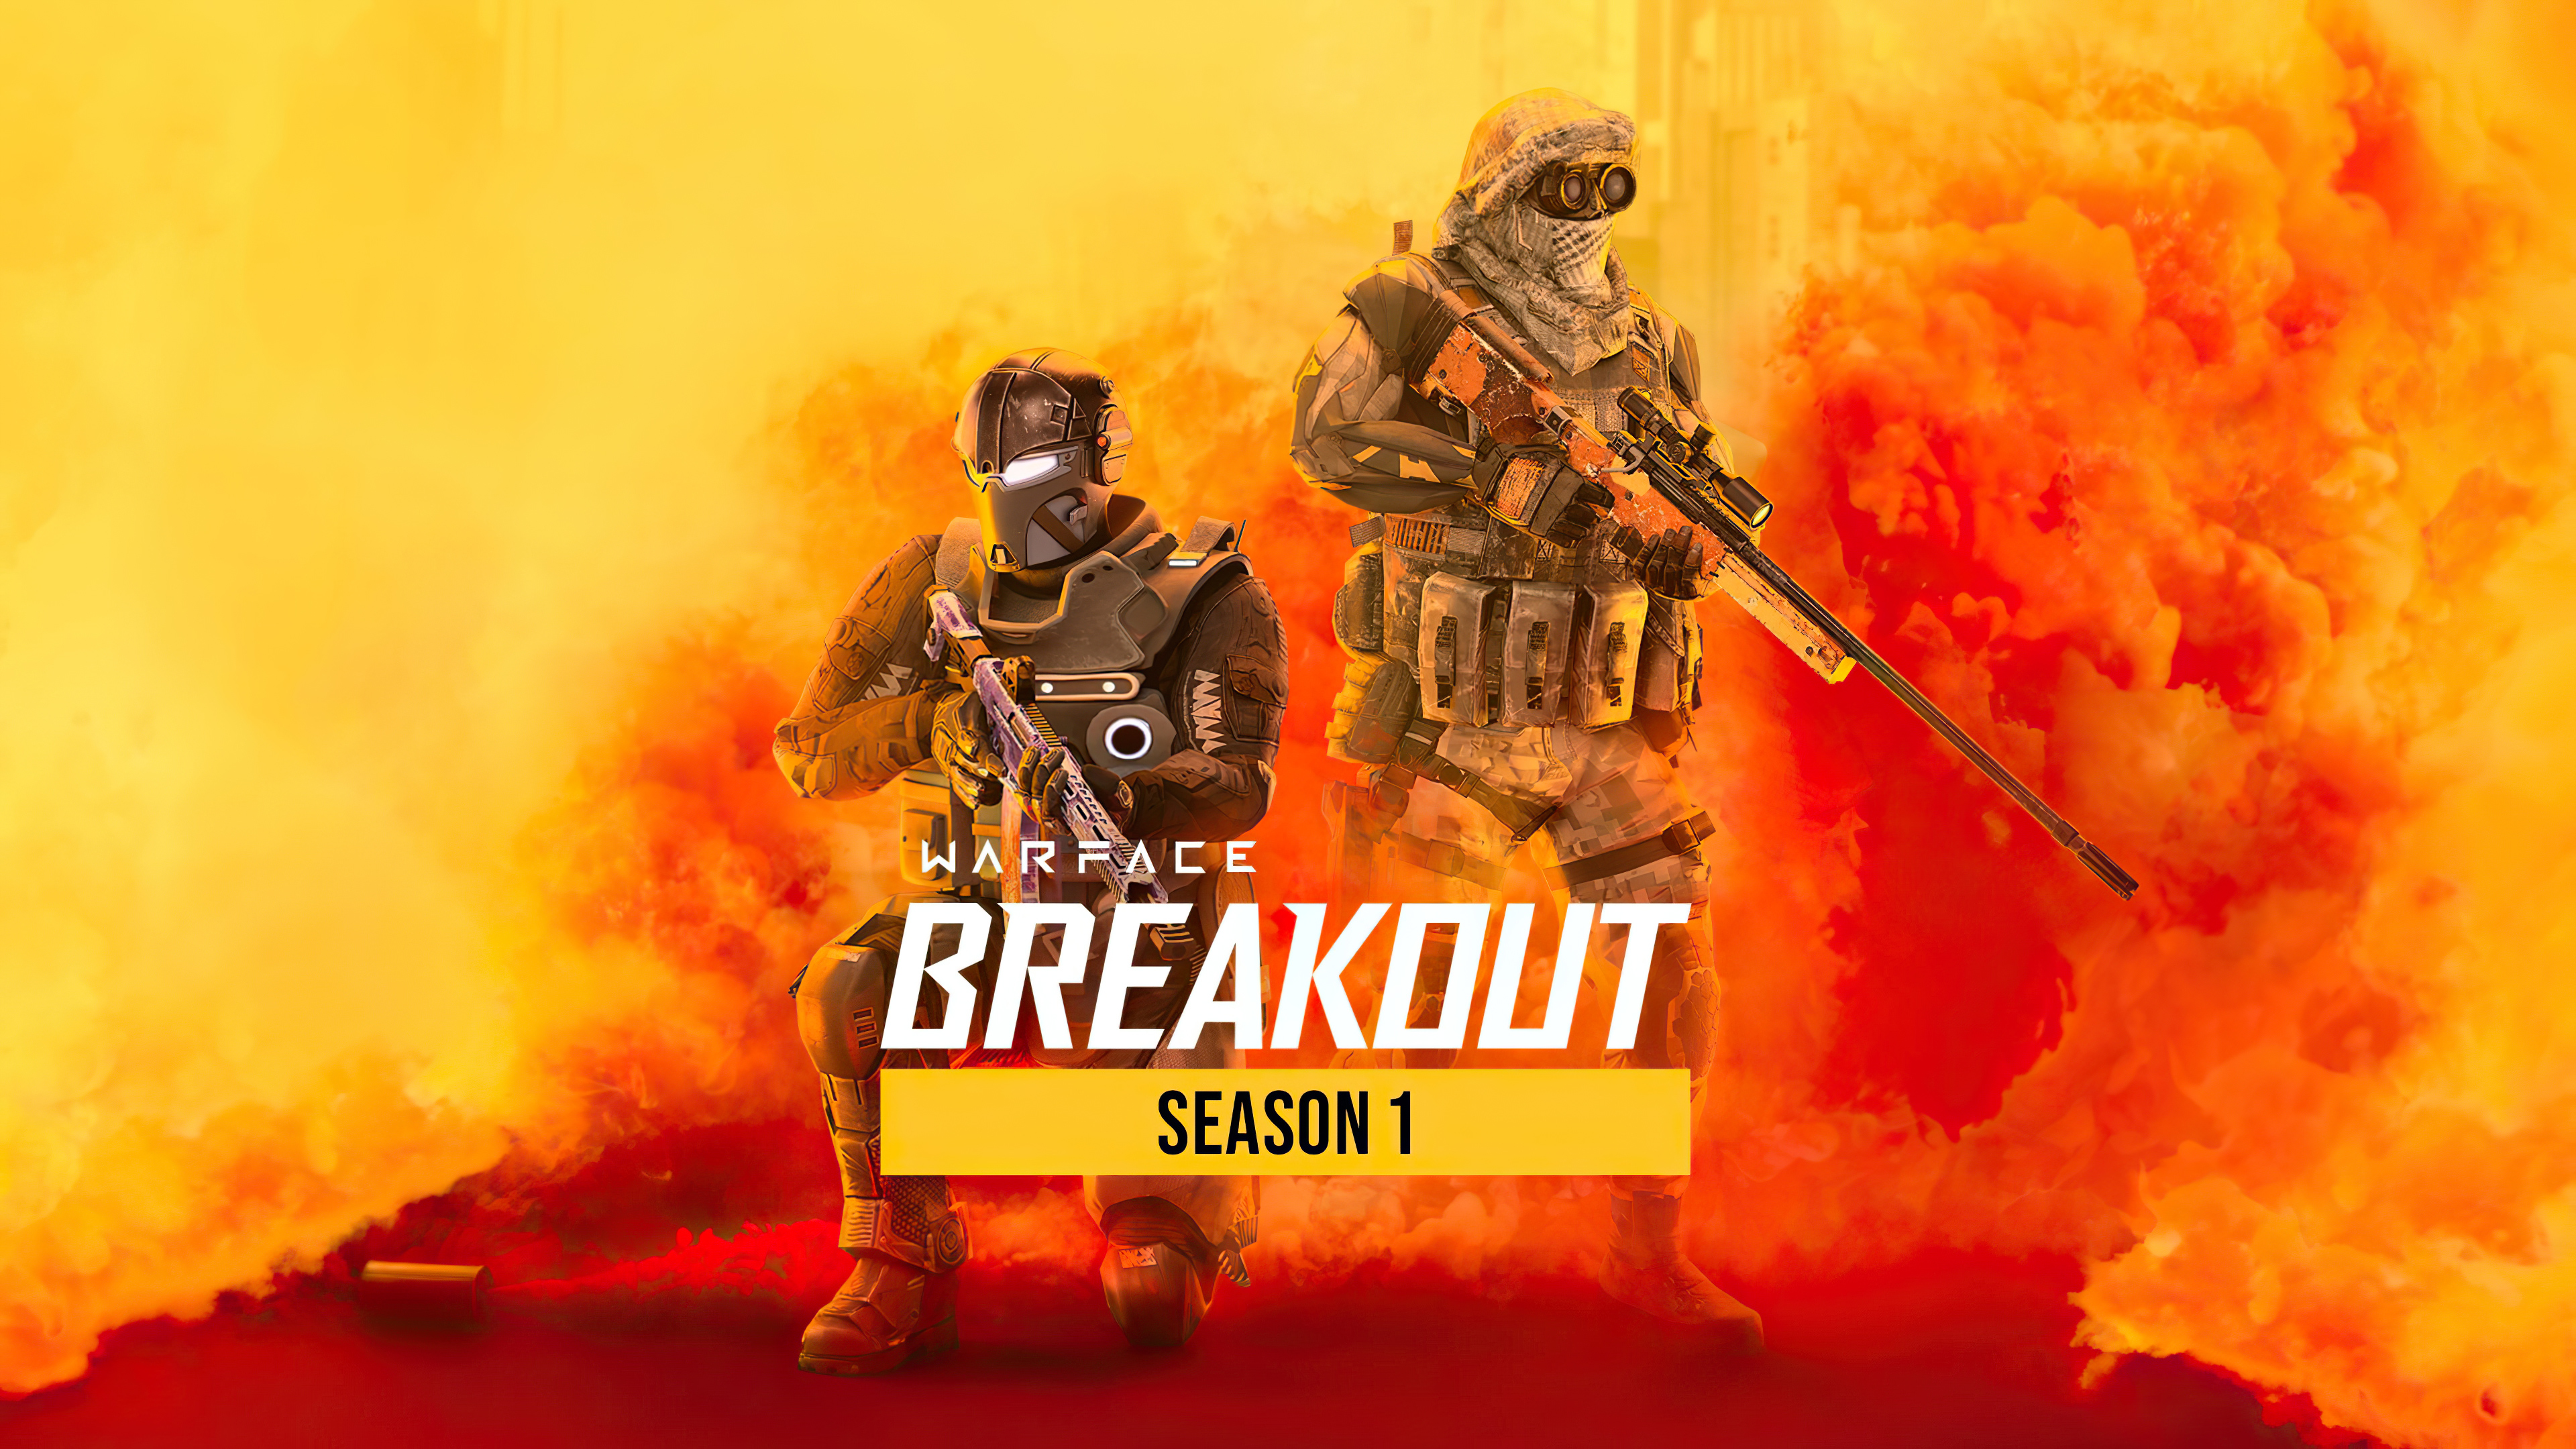 warface breakout season 1 1596989349 - Warface Breakout Season 1 - Warface Breakout Season 1 wallpapers, Warface Breakout Season 1 4k wallpapers